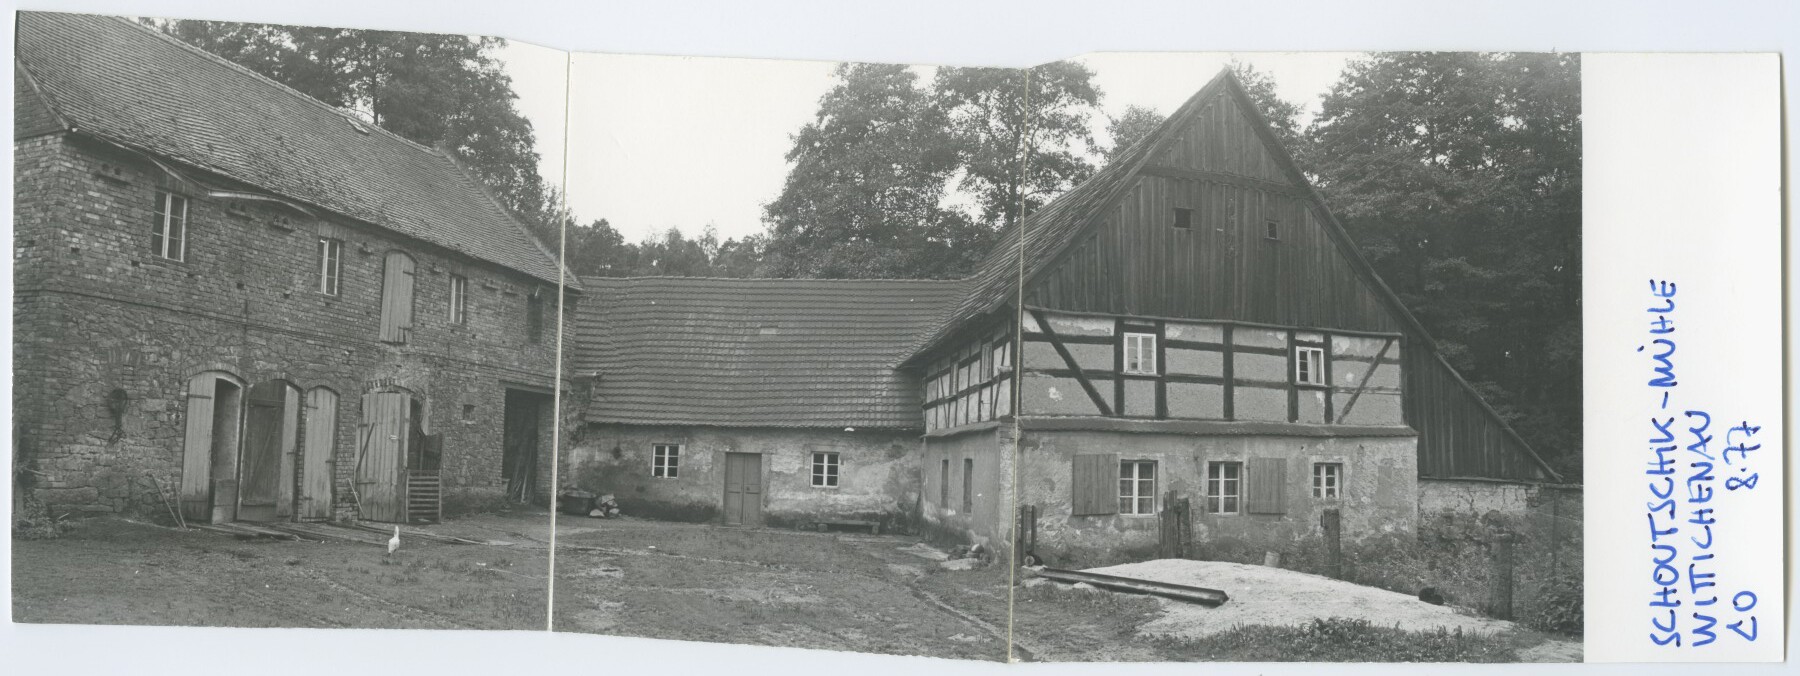 Schowtschickmühle Wittichenau (Historische Mühle von Sanssouci CC BY-NC-ND)